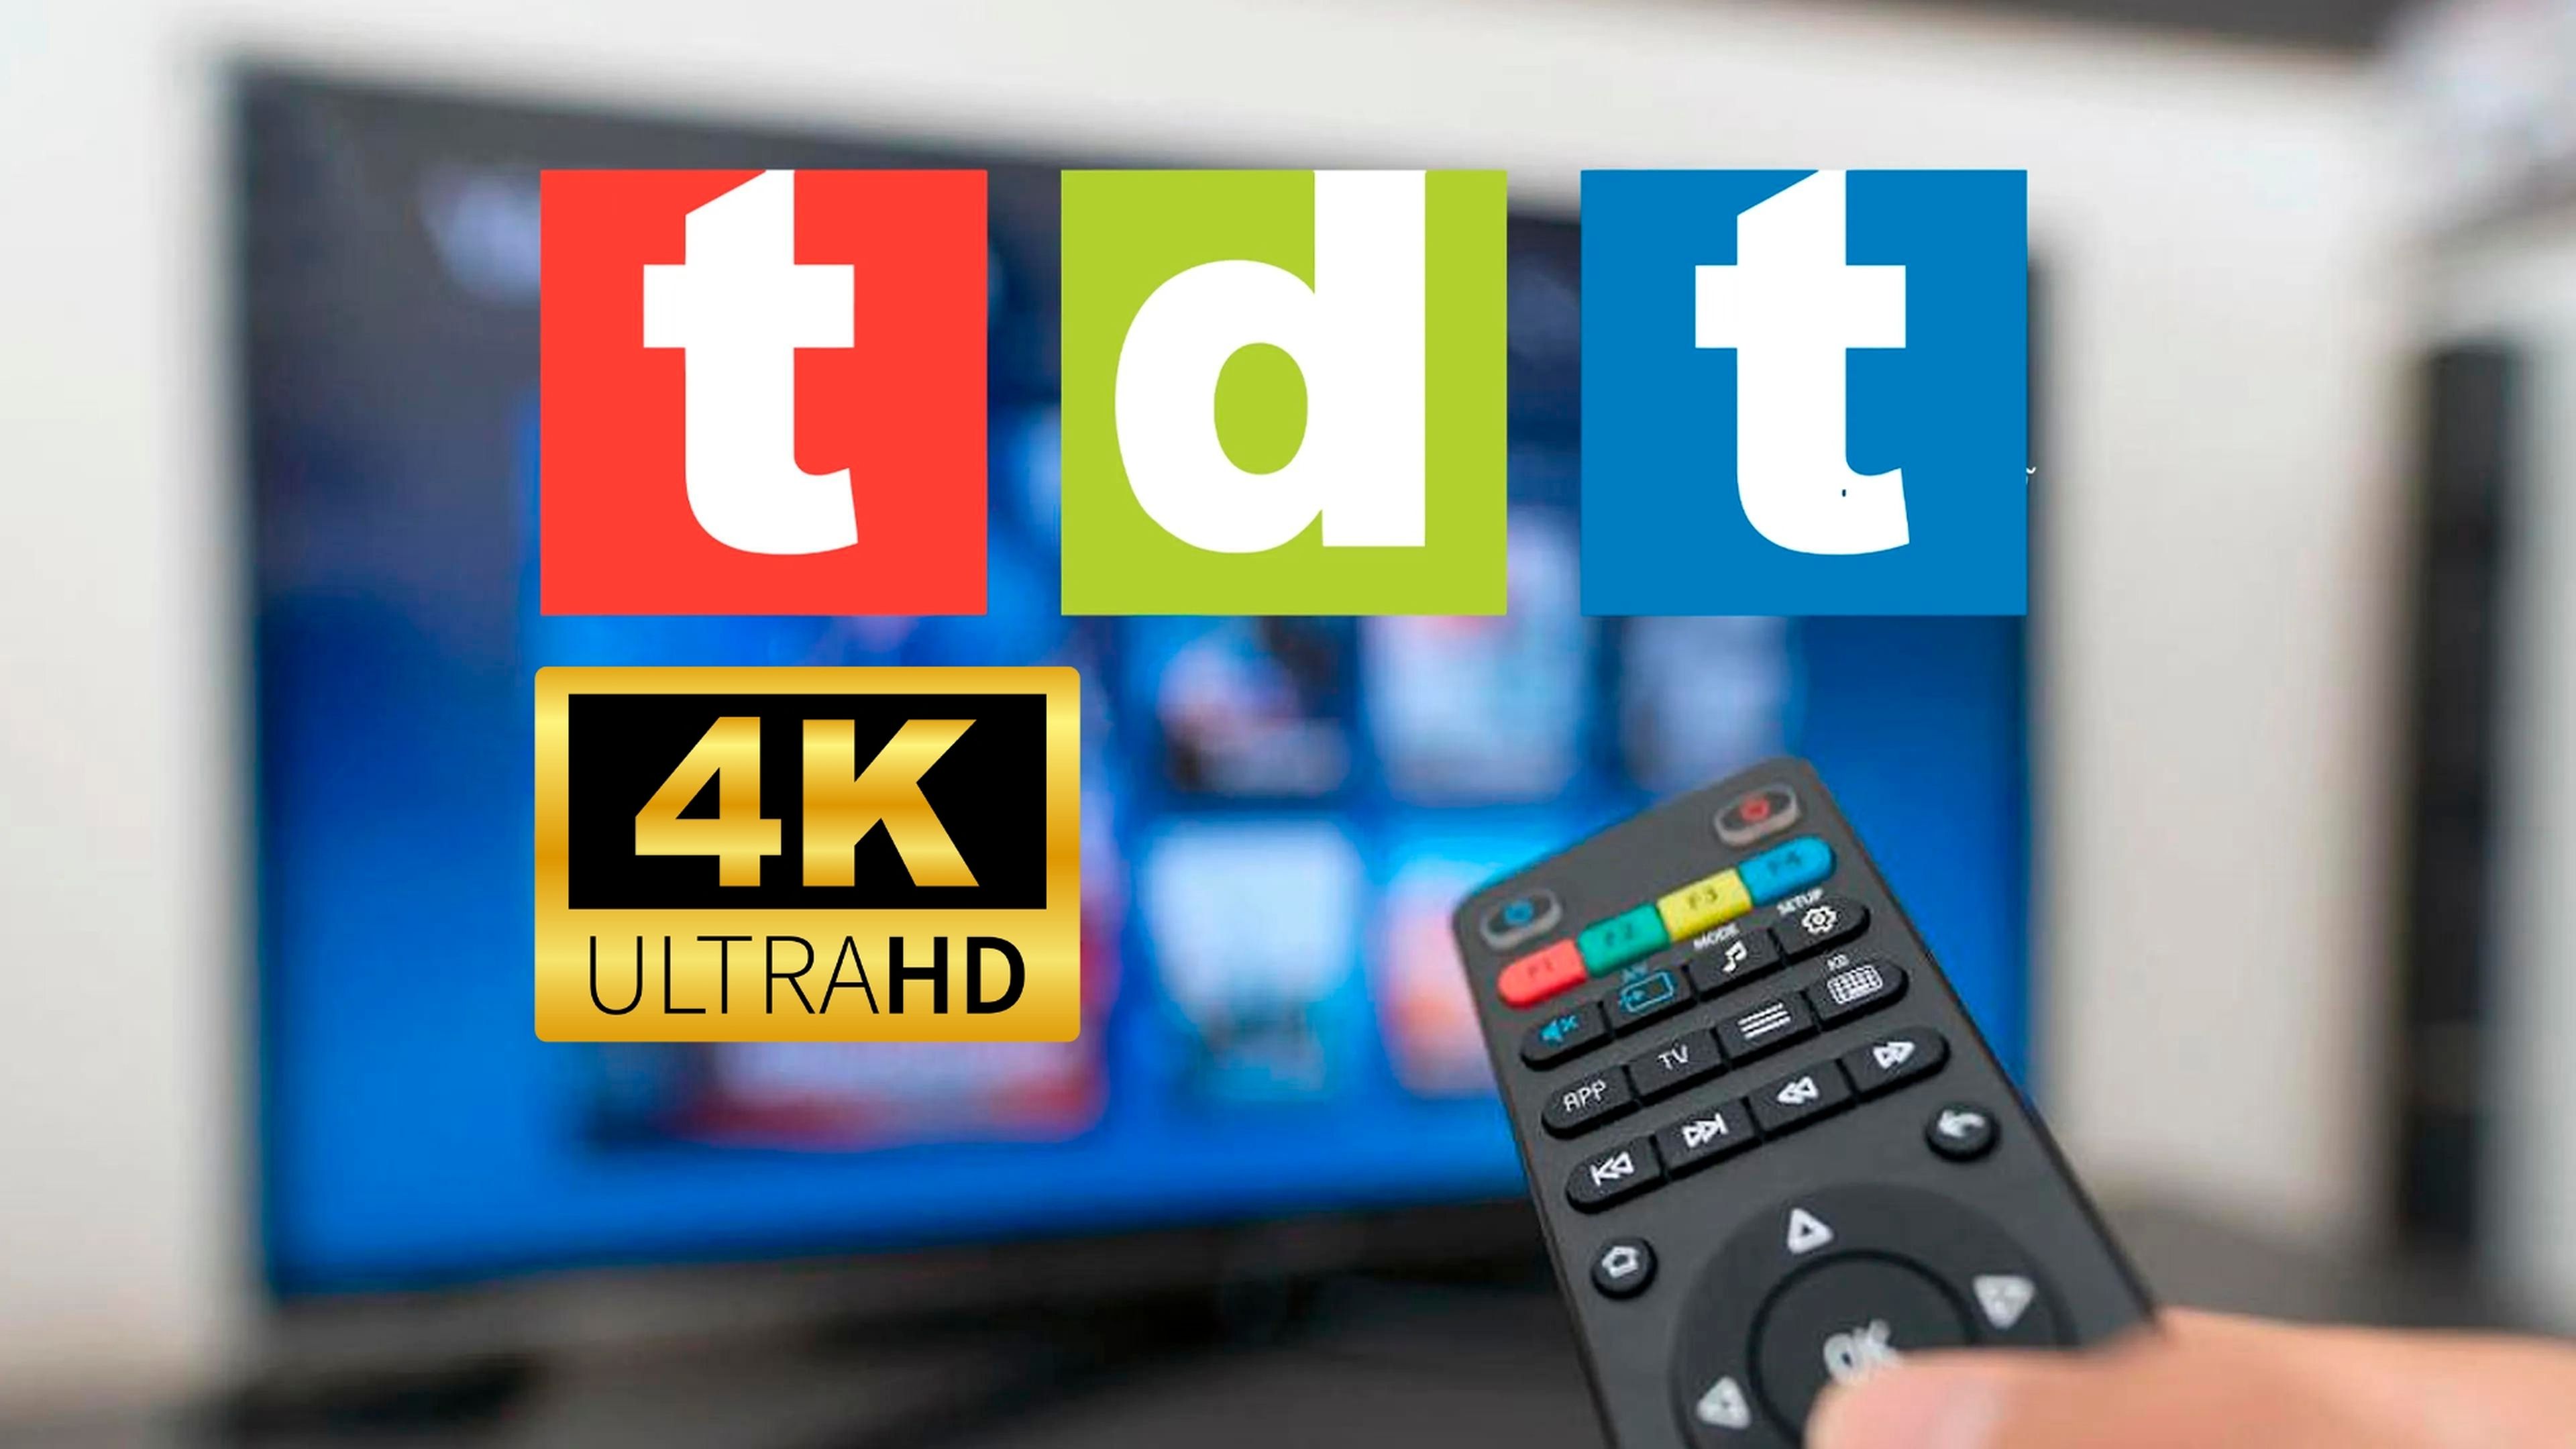 La TDT está a punto de cambiar: qué hace falta para ver los canales en HD